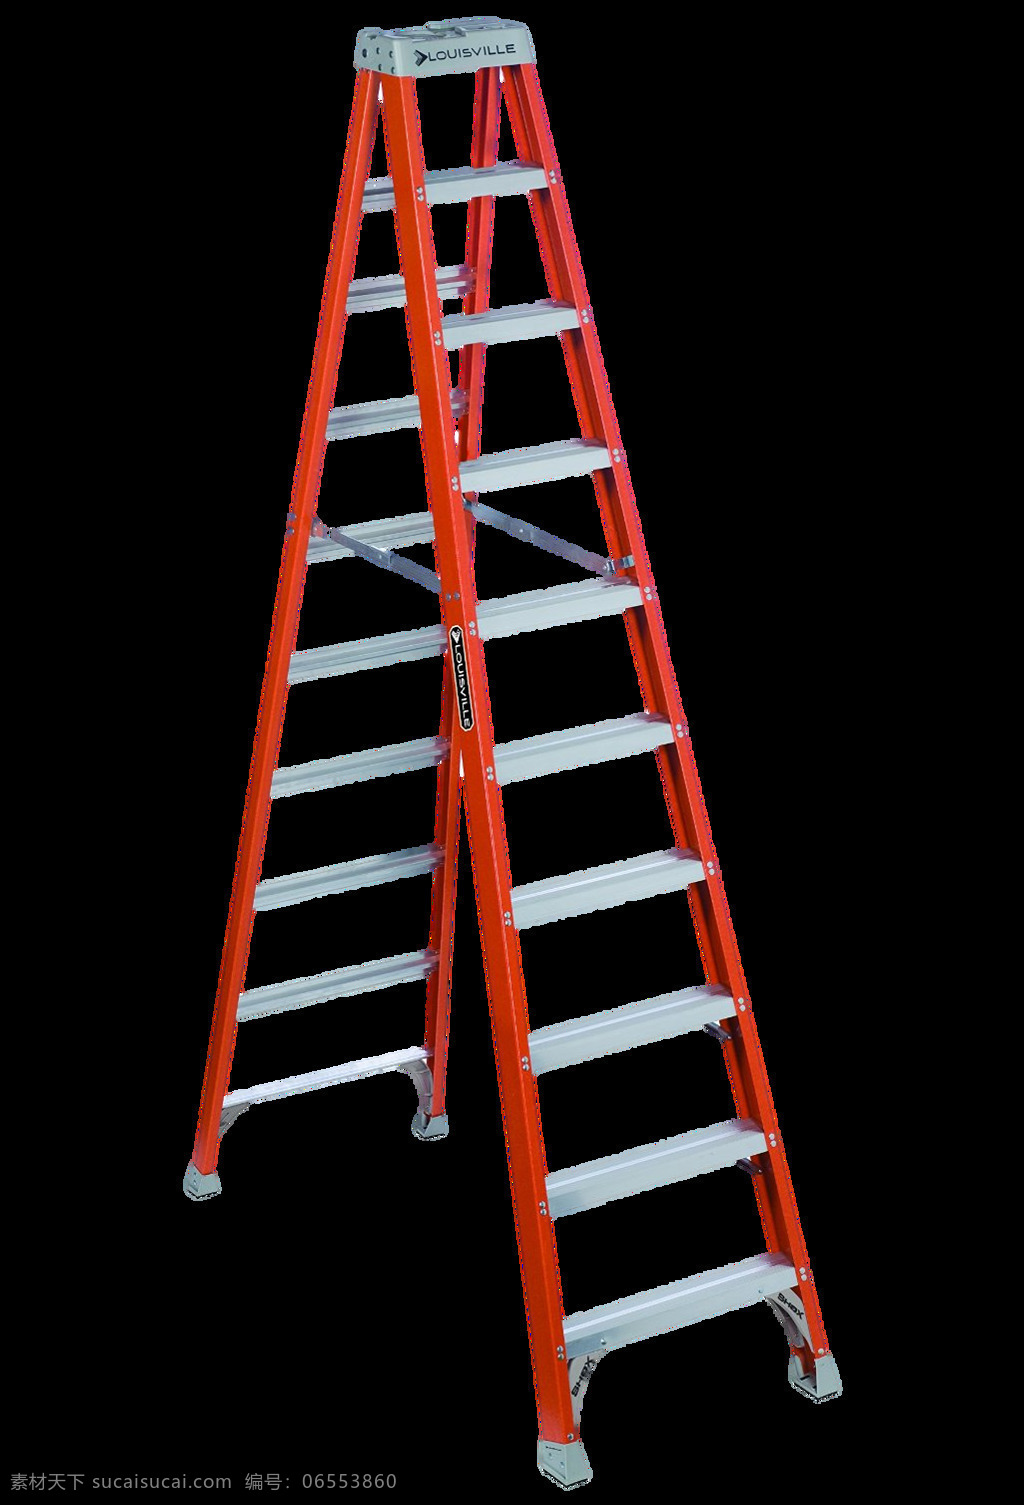 红色 人字 梯子 免 抠 透明 图 层 梯子卡通图片 叠梯子 翻墙梯子 吊梯子 铁梯子 架梯子 创意梯子 长梯子 梯子素材 木头梯子 木梯子 竹梯子 云梯 工程梯子 折叠梯子